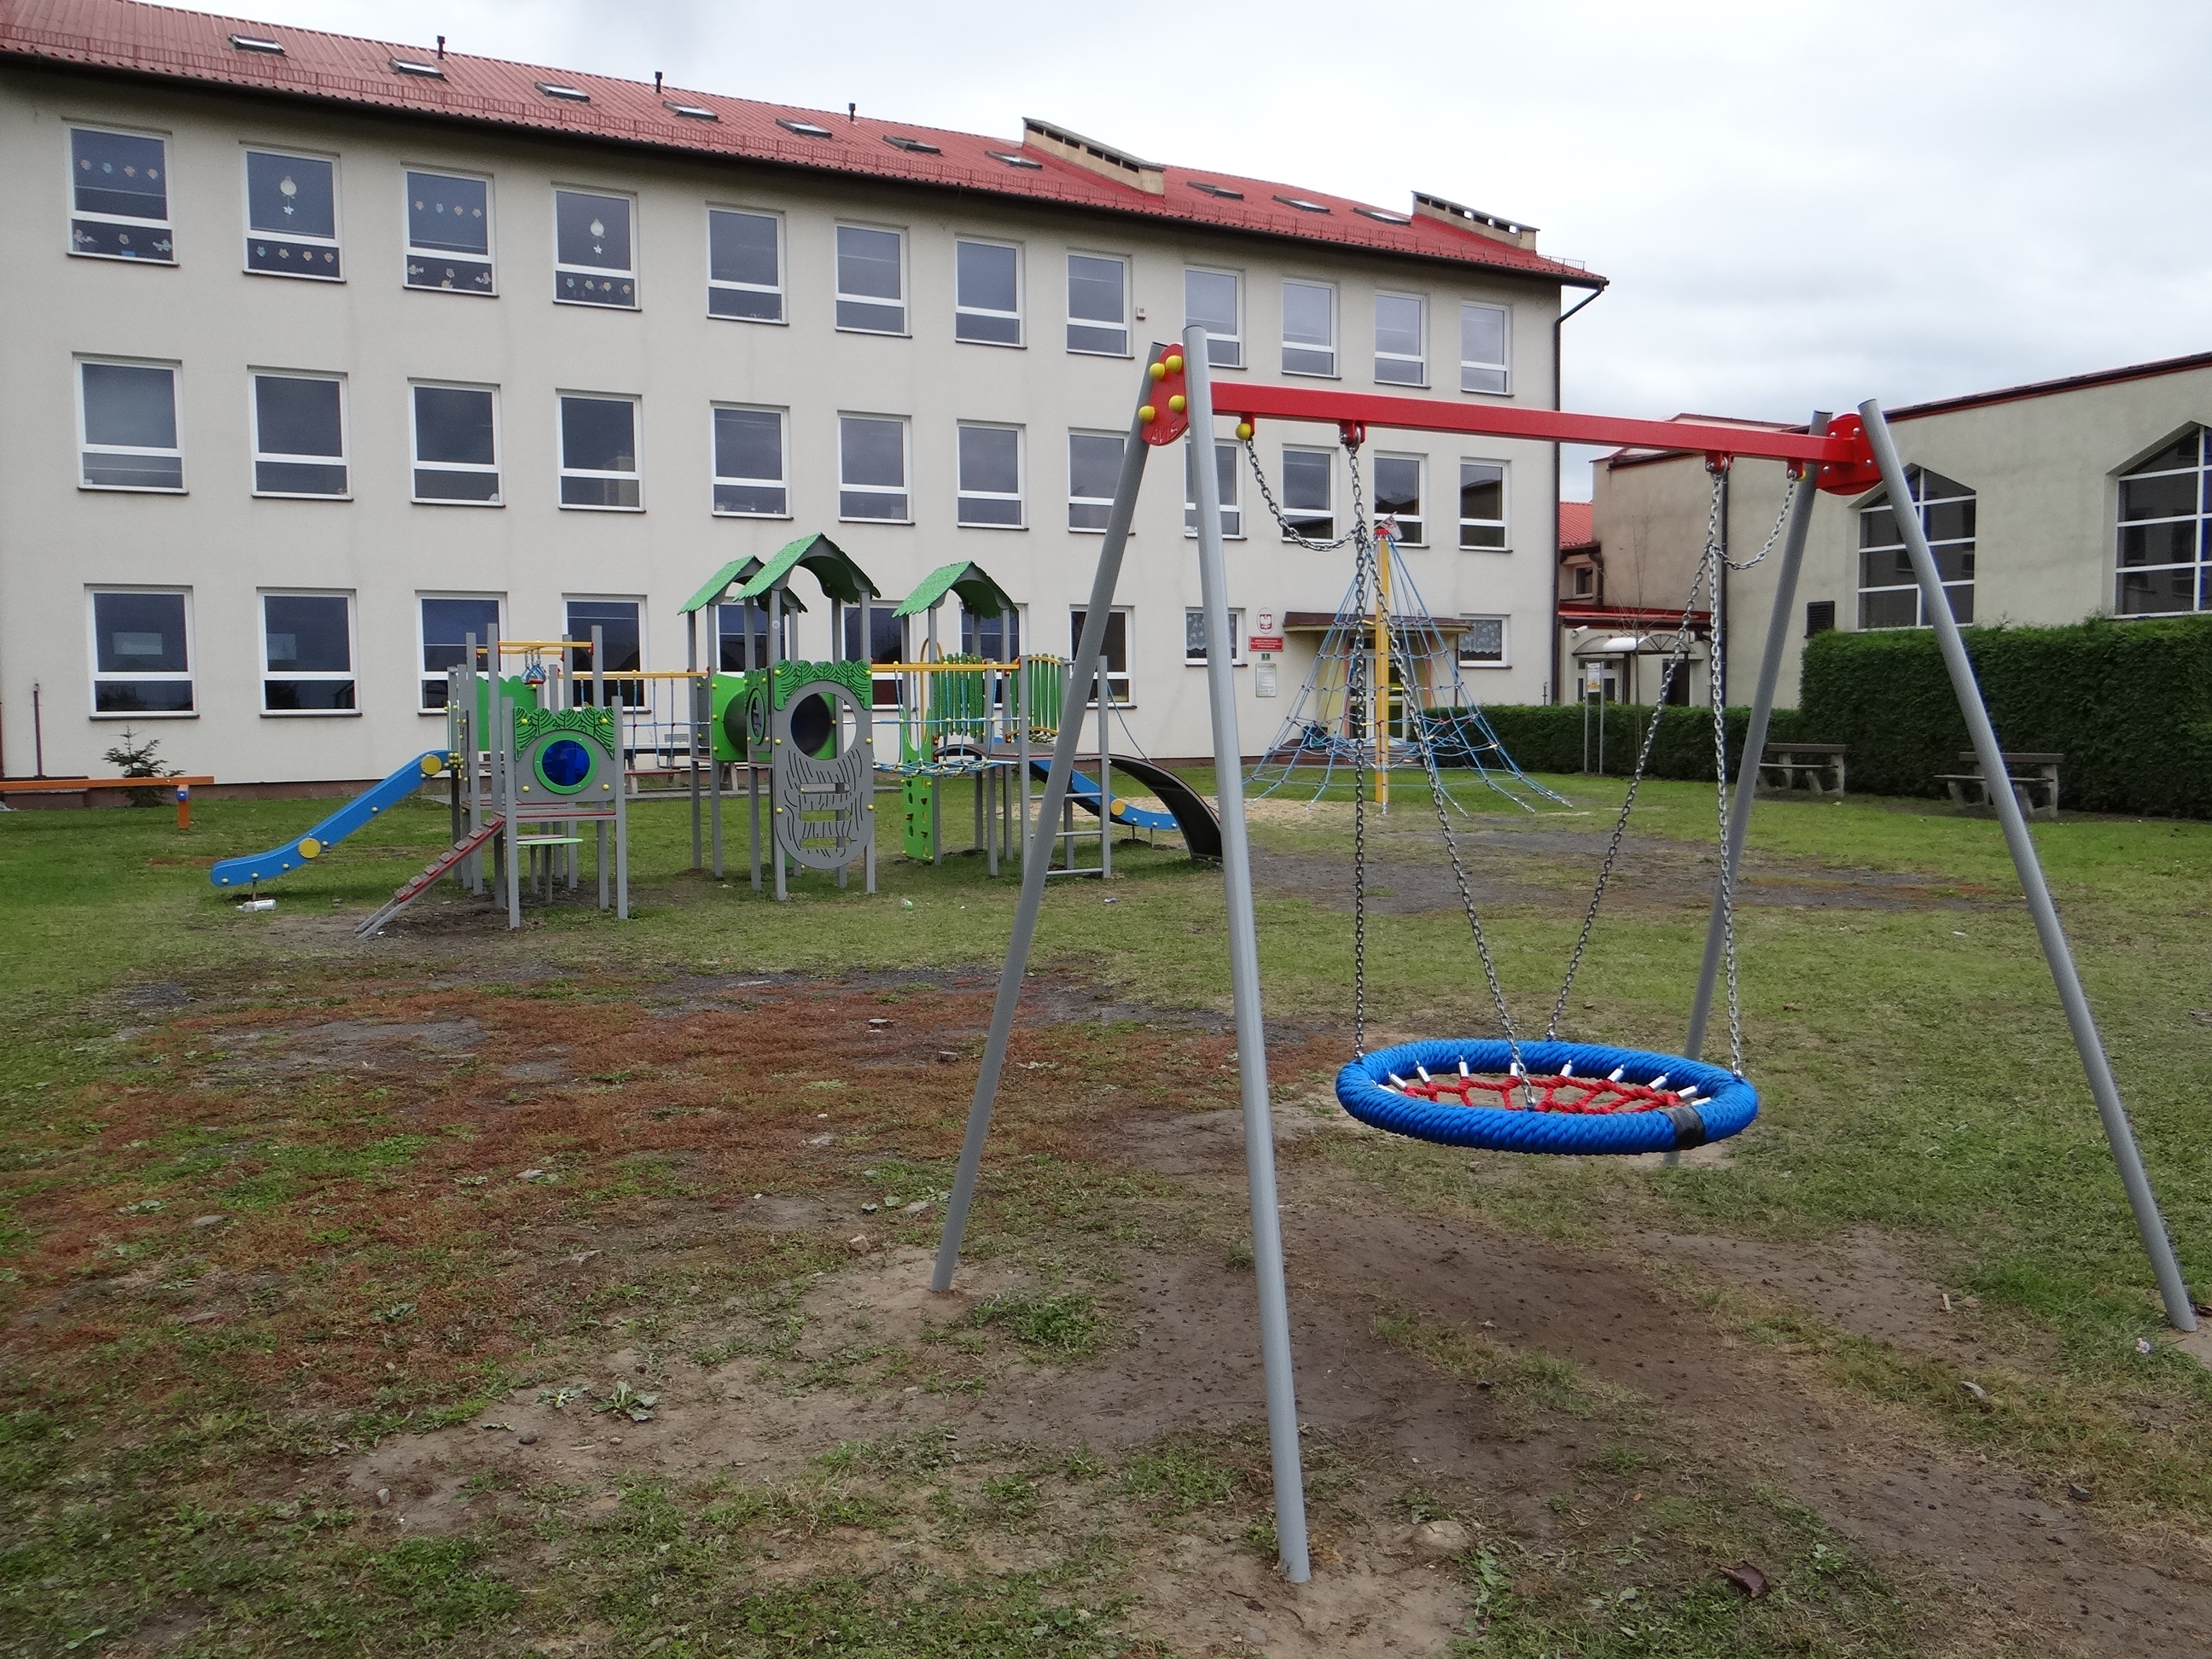 Ogólnodostępny plac zabaw przy Szkole Podstawowej w Pogwizdowie po modernizacji (2). Widoczna część urządzeń placu. Z tyłu budynek szkolny (skrzydło wschodnie) i hala sportowa.